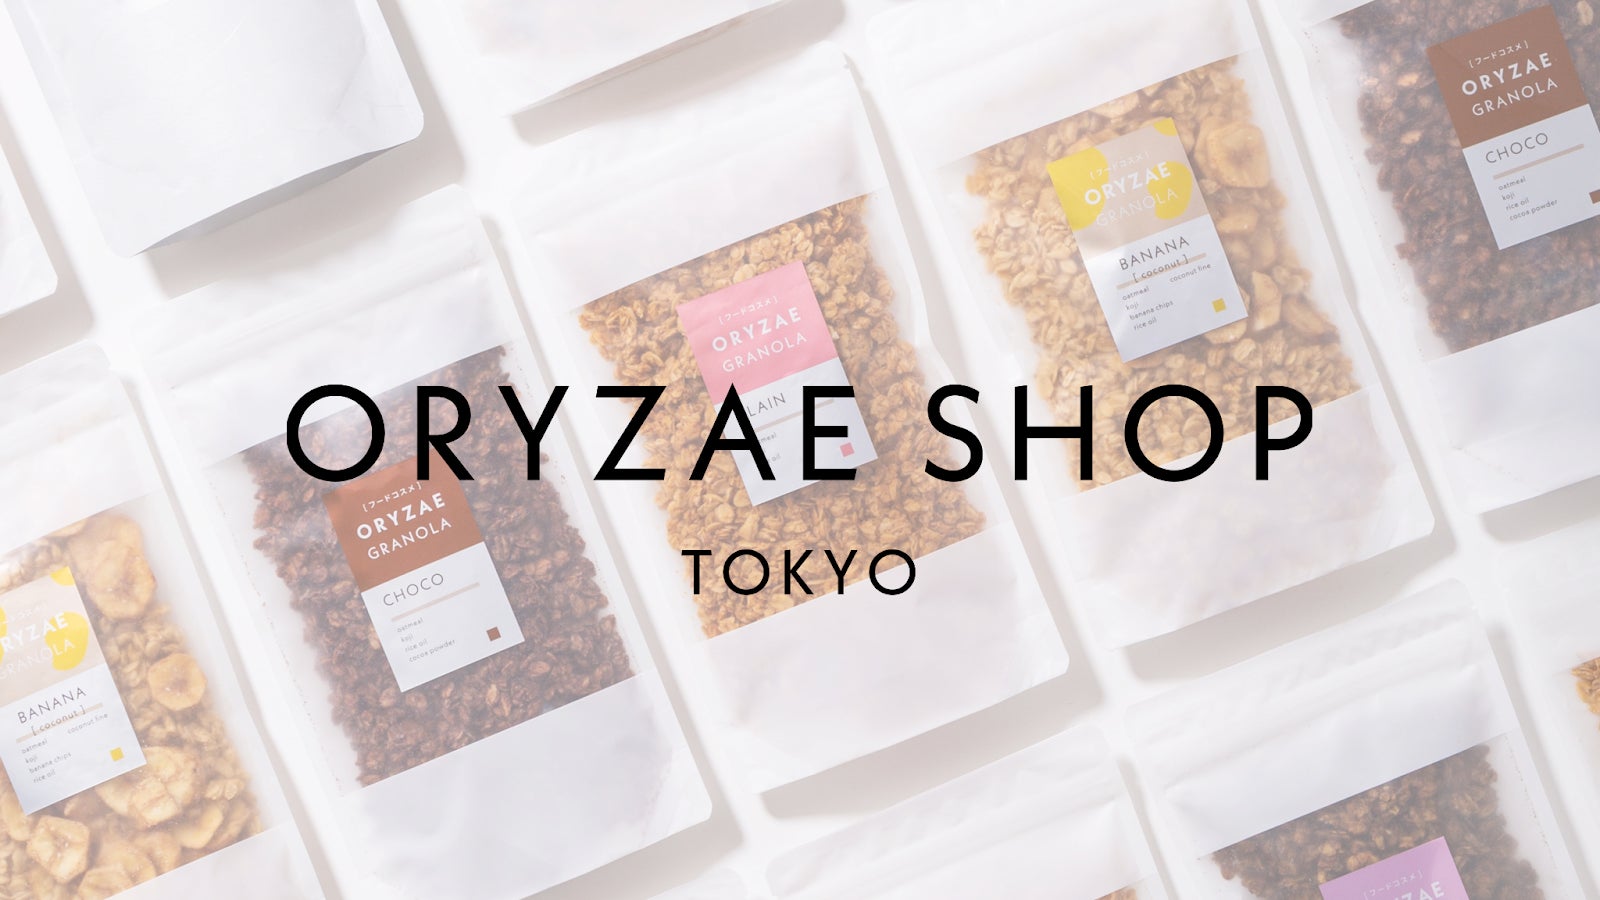 発酵食品D2Cオリゼの新たな拠点「ORYZAE SHOP」が目黒区青葉台にオープン。9月1日から限定販売開始